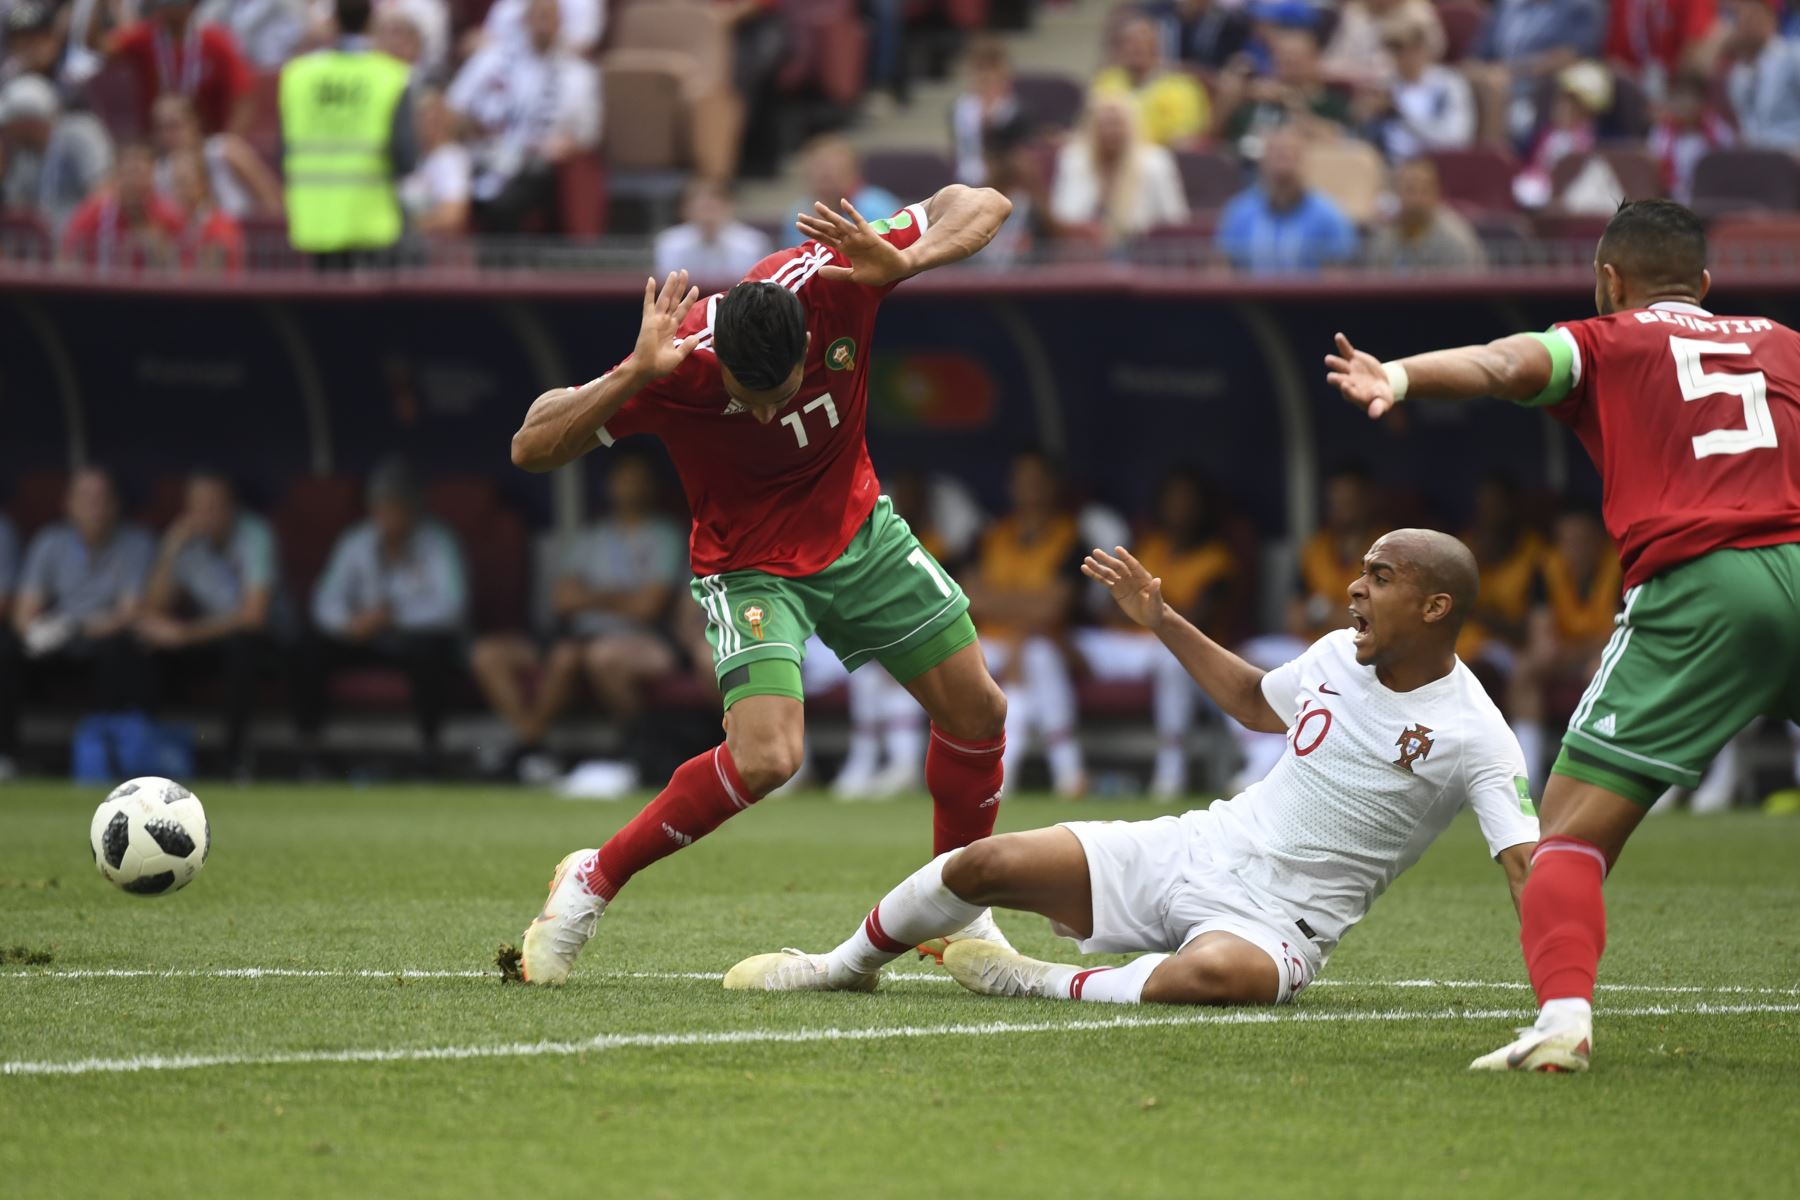 El defensor marroquí Nabil Dirar, el centrocampista portugués Joao Mario y el defensor marroquí Mehdi Benatia reaccionan durante el partido de fútbol del Grupo B de la Copa Mundial Rusia 2018 entre Portugal y Marruecos en el Estadio Luzhniki en Moscú el 20 de junio de 2018. / AFP